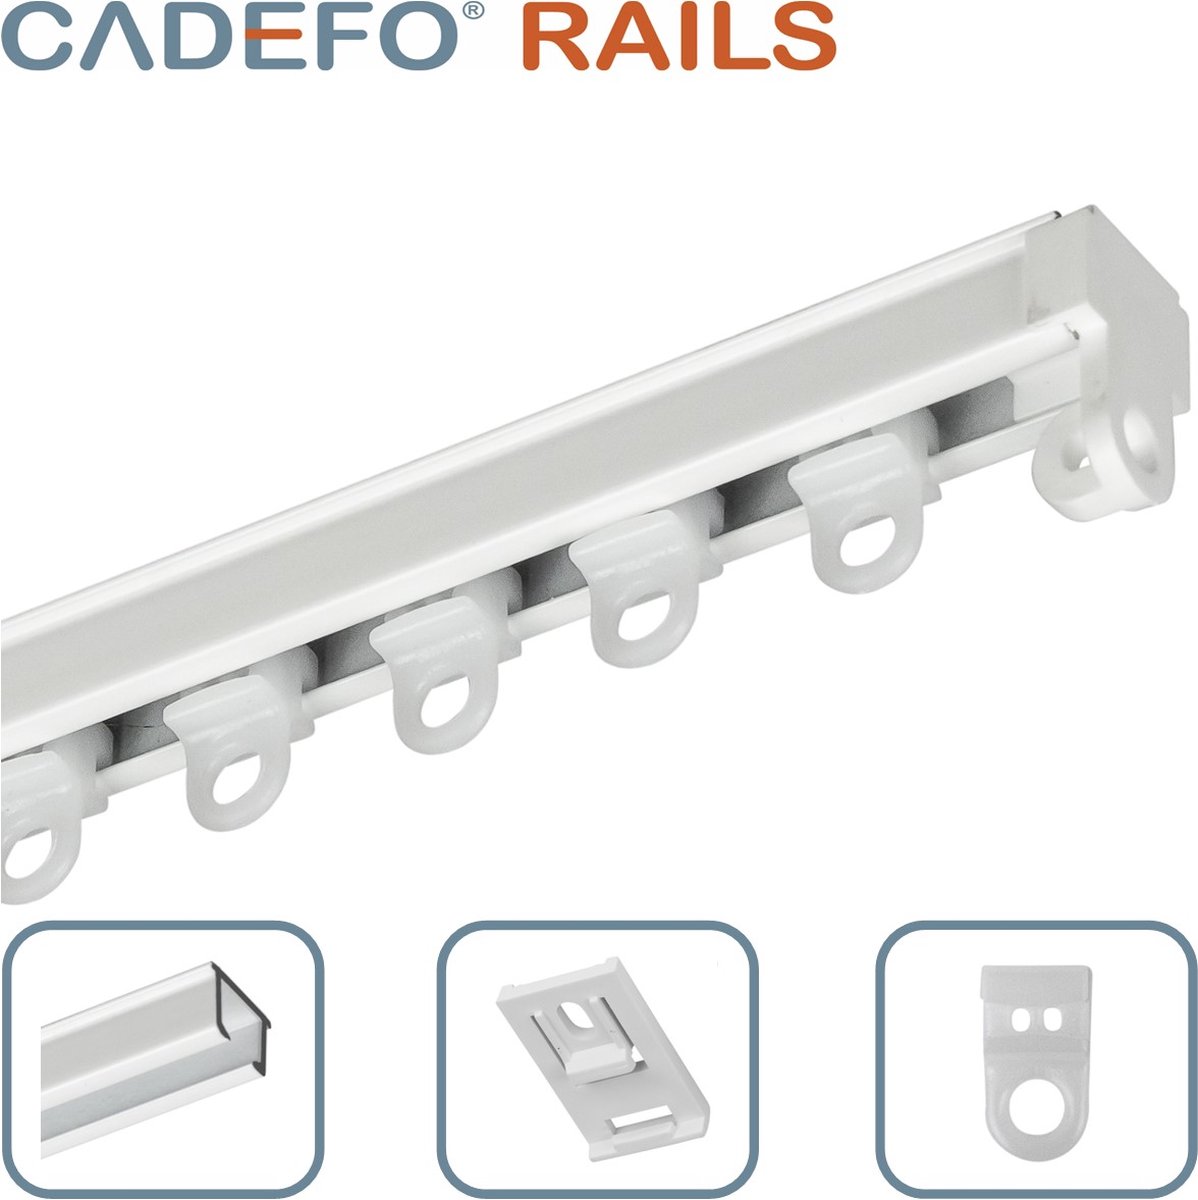 CADEFO RAILS (551 - 600 cm) Gordijnrails - Compleet op maat! - UIT 1 STUK - Leverbaar tot 6 meter - Plafondbevestiging - Lengte 597 cm